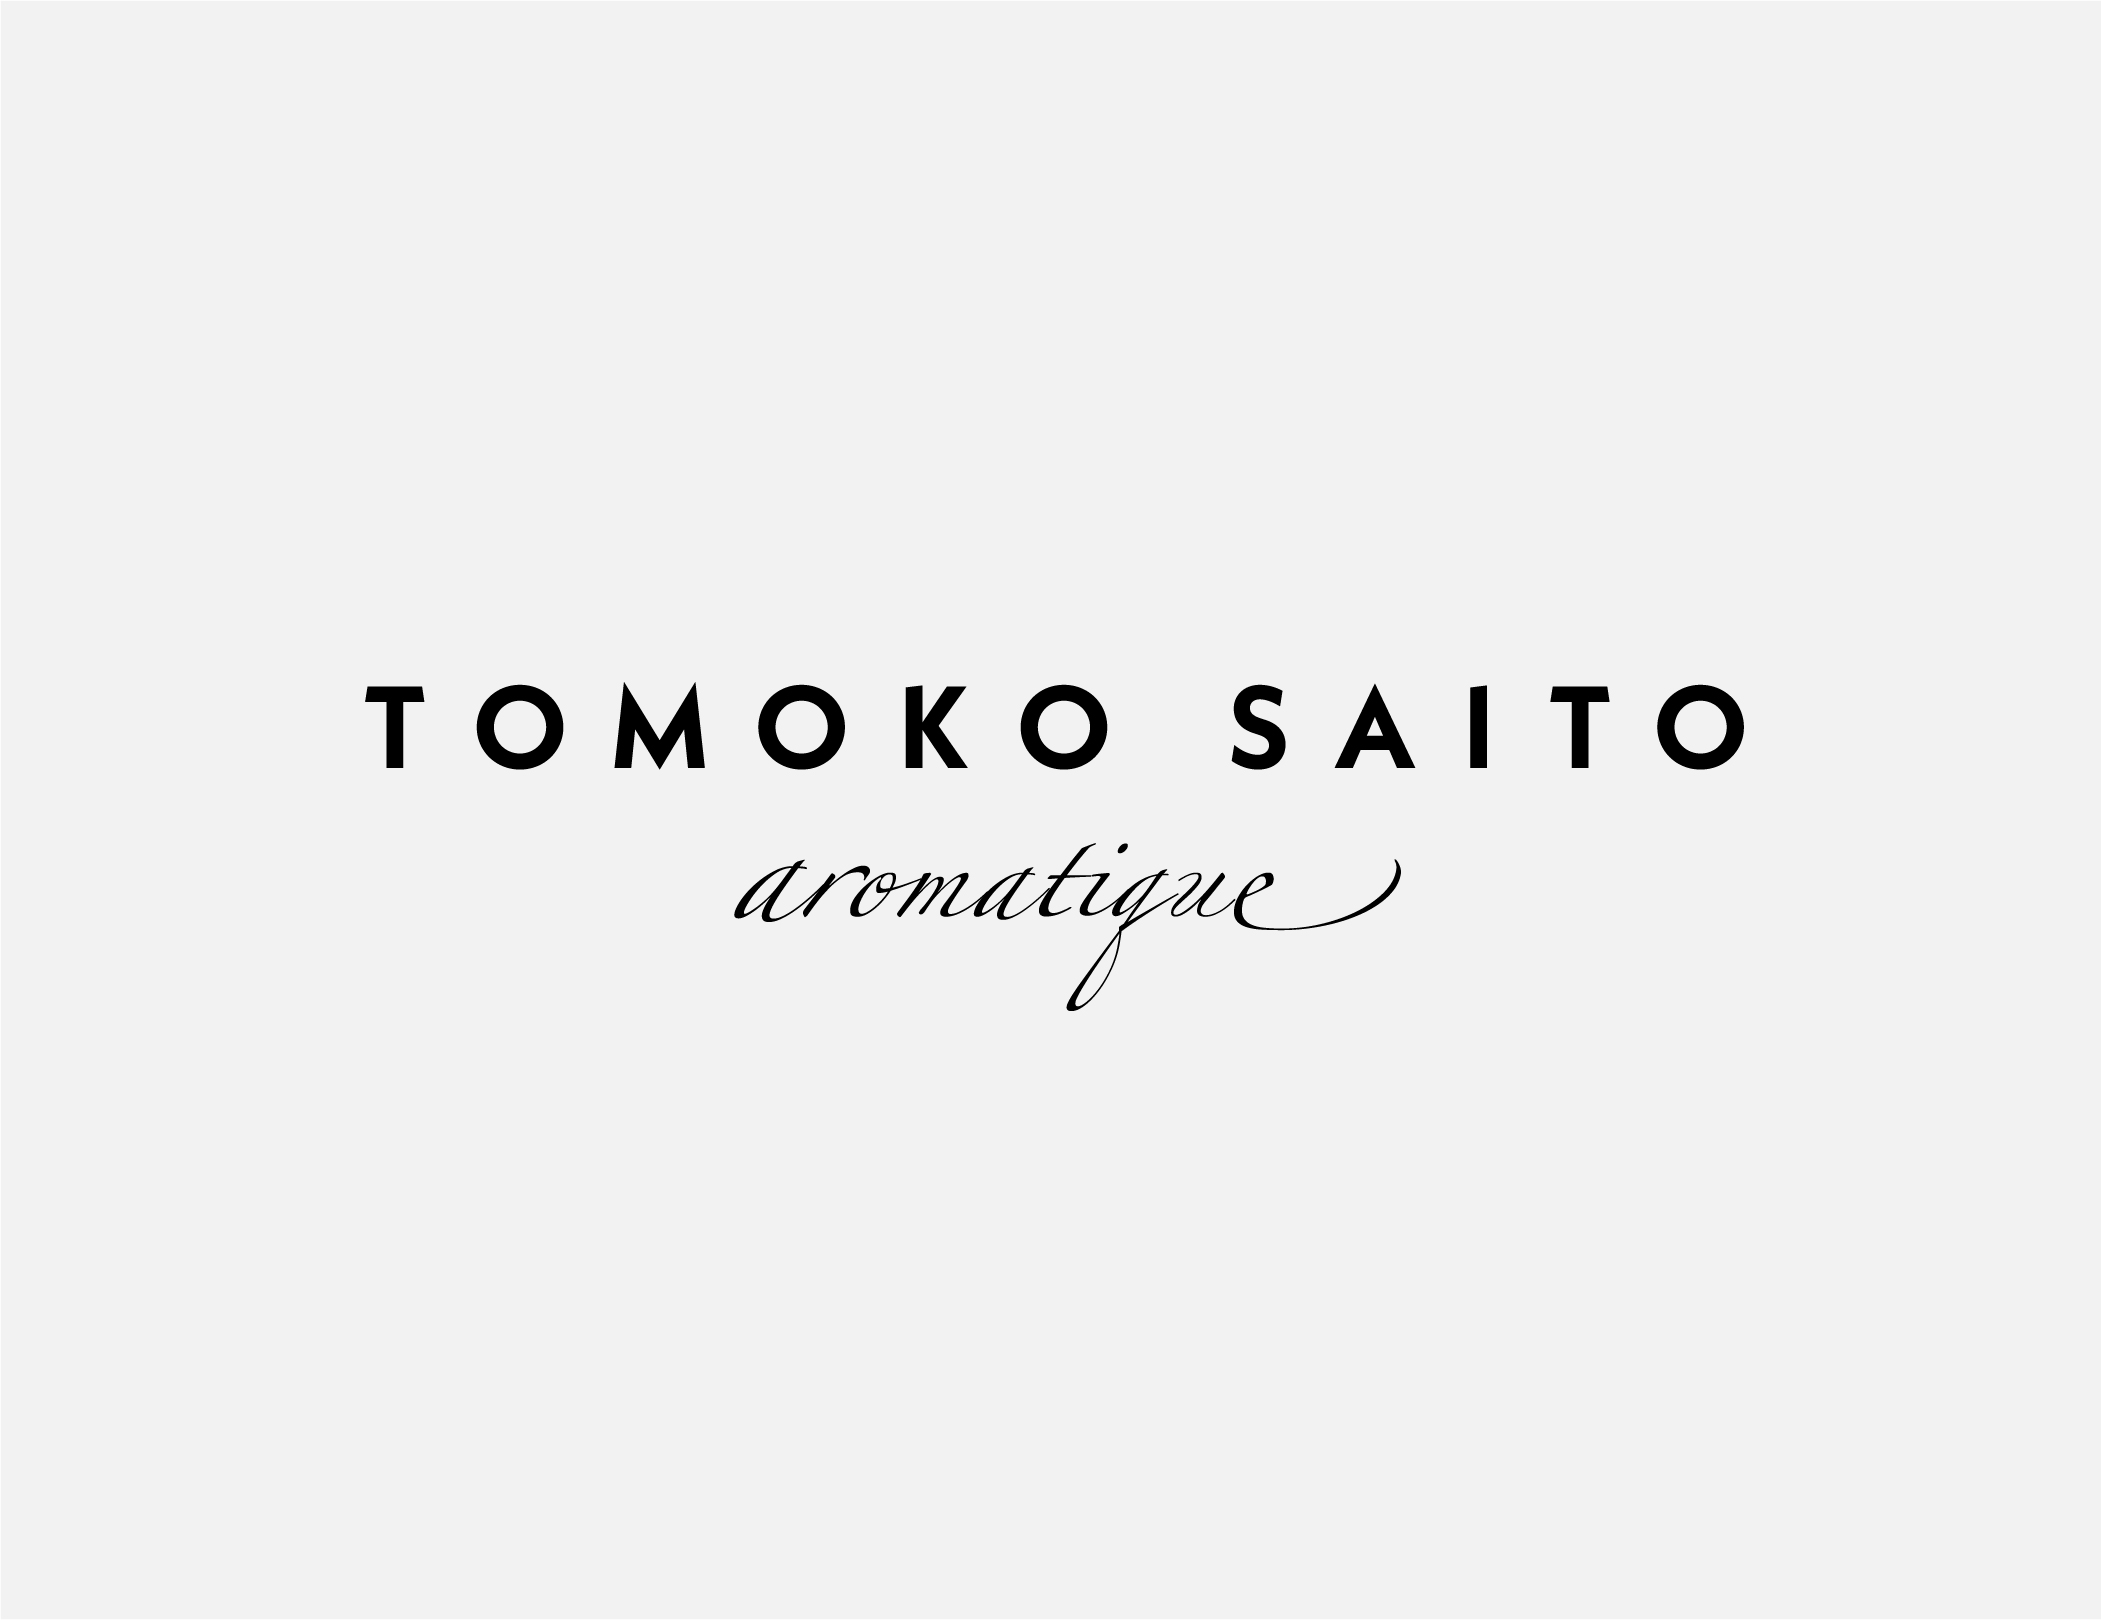 TOMOKO SAITO aromatique ロゴ